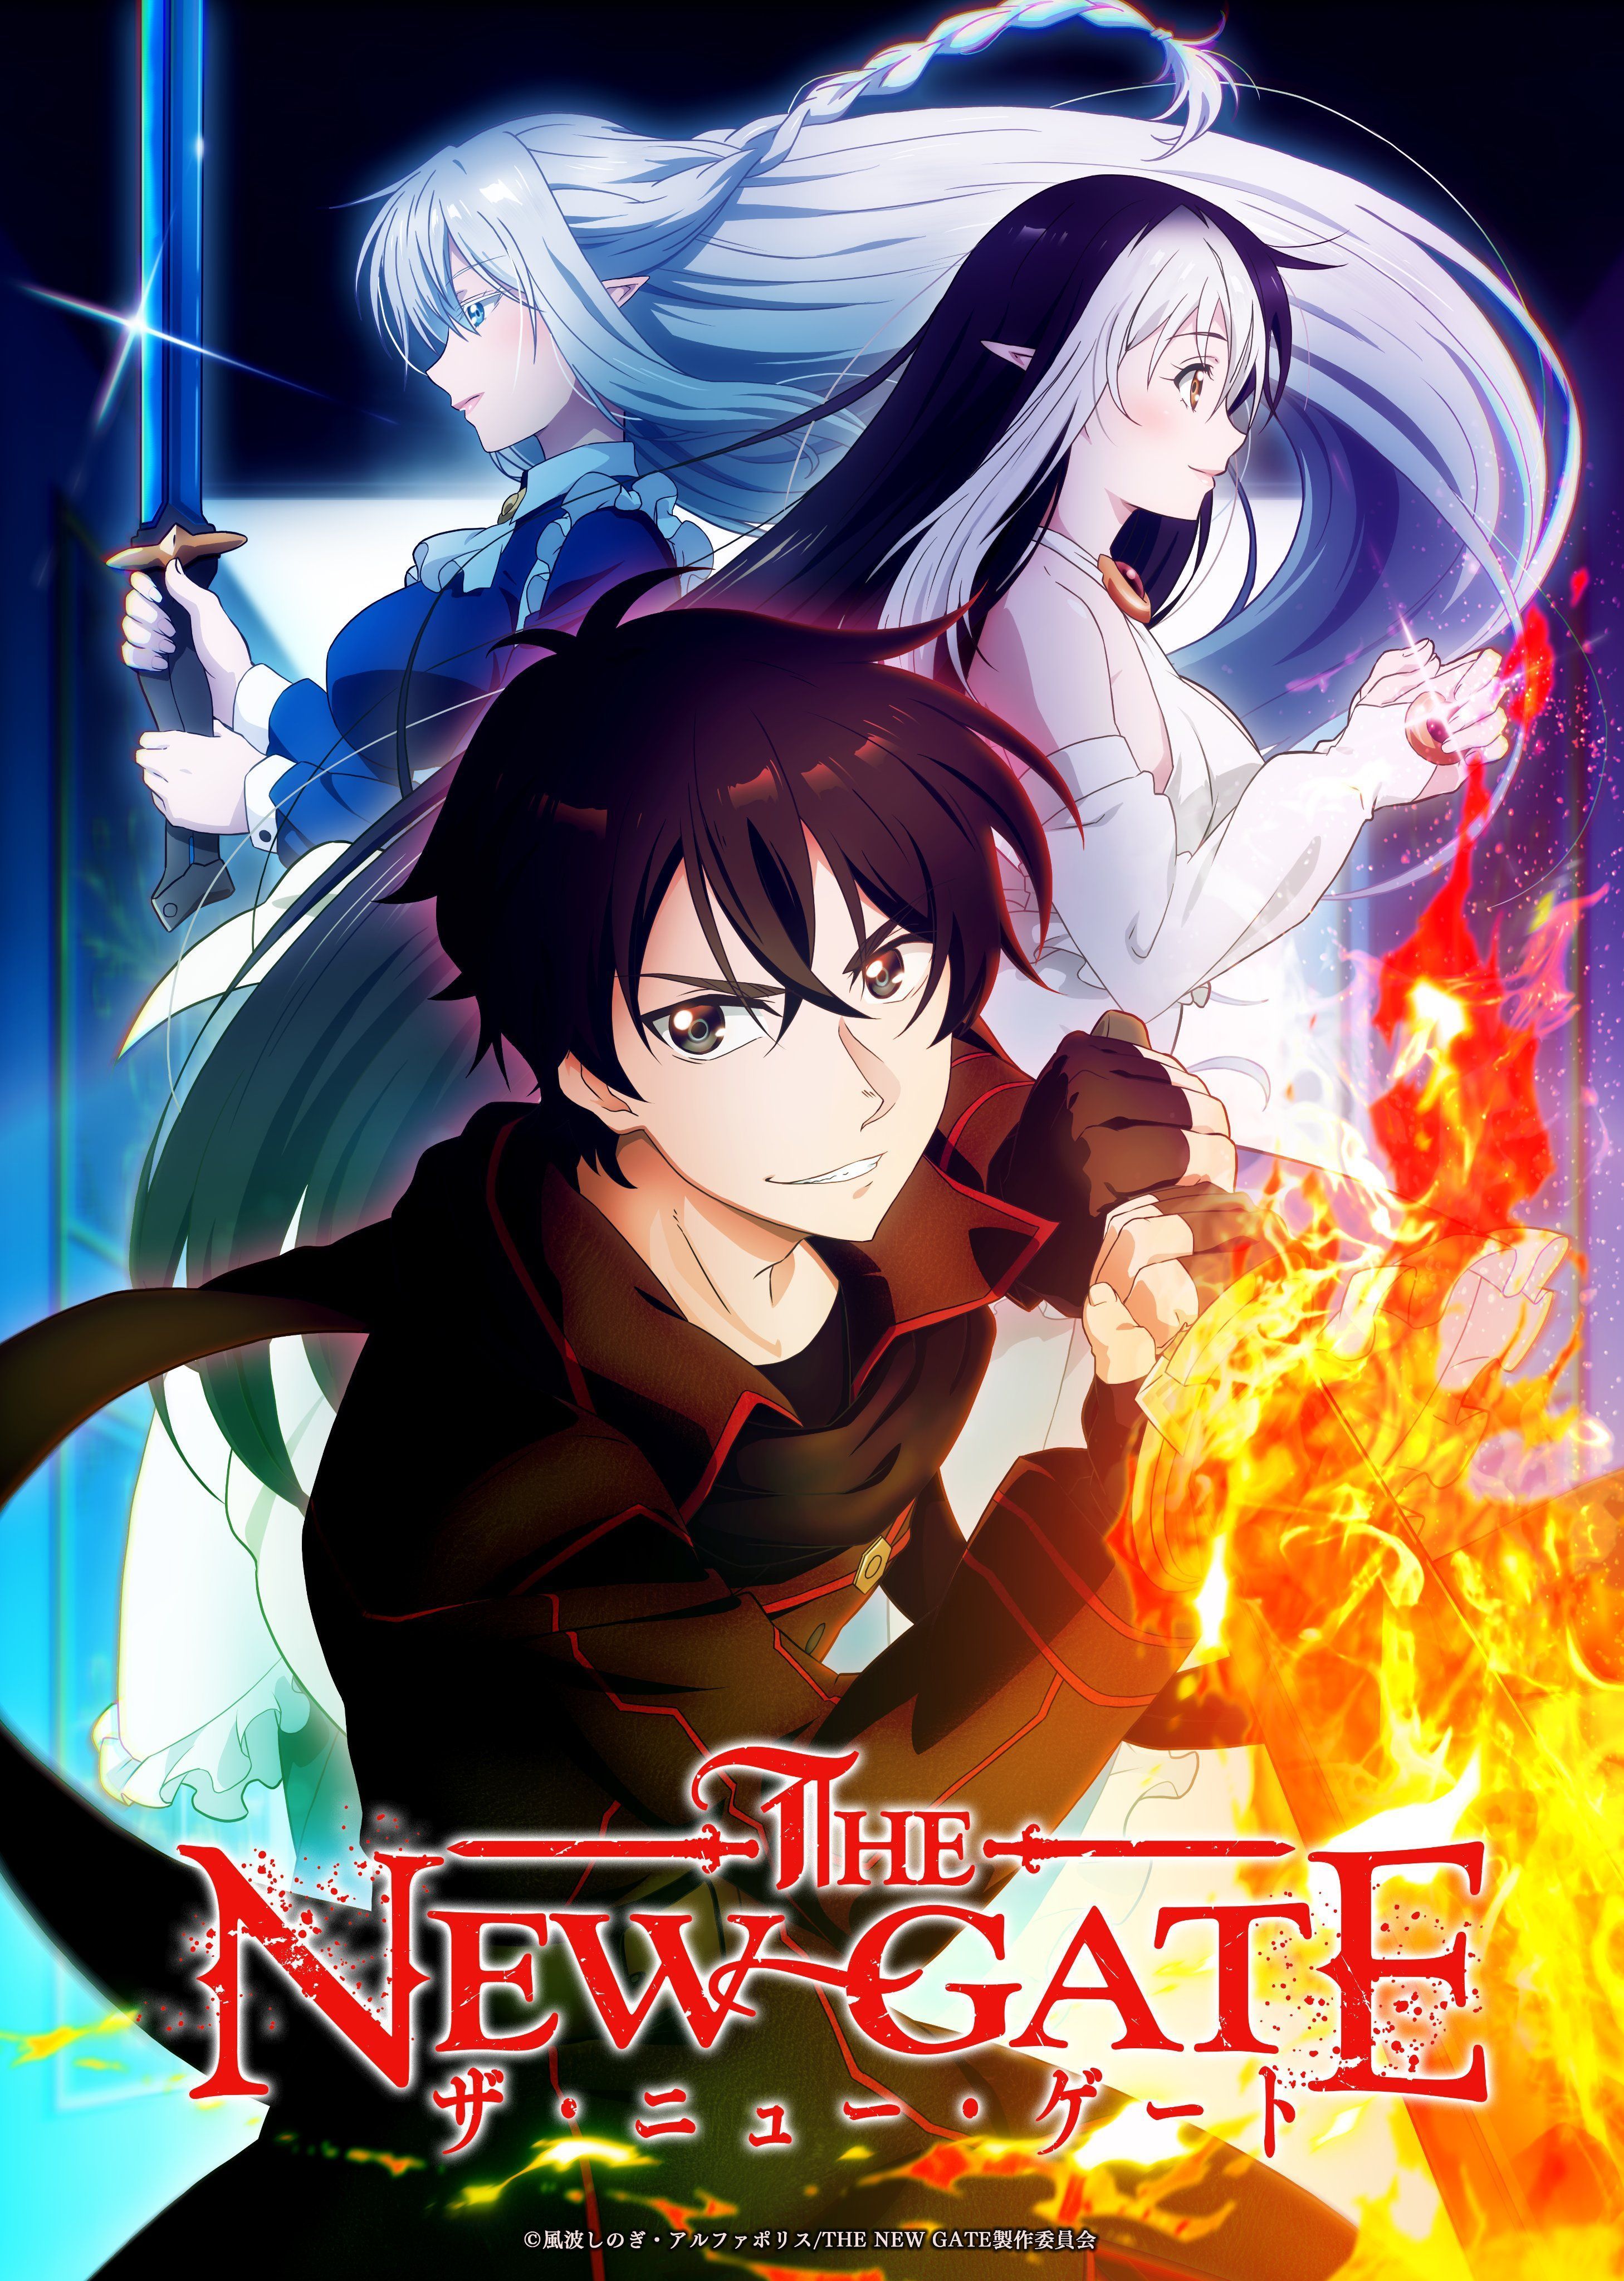 Série inovadora de Isekai finalmente ganha adaptação para anime